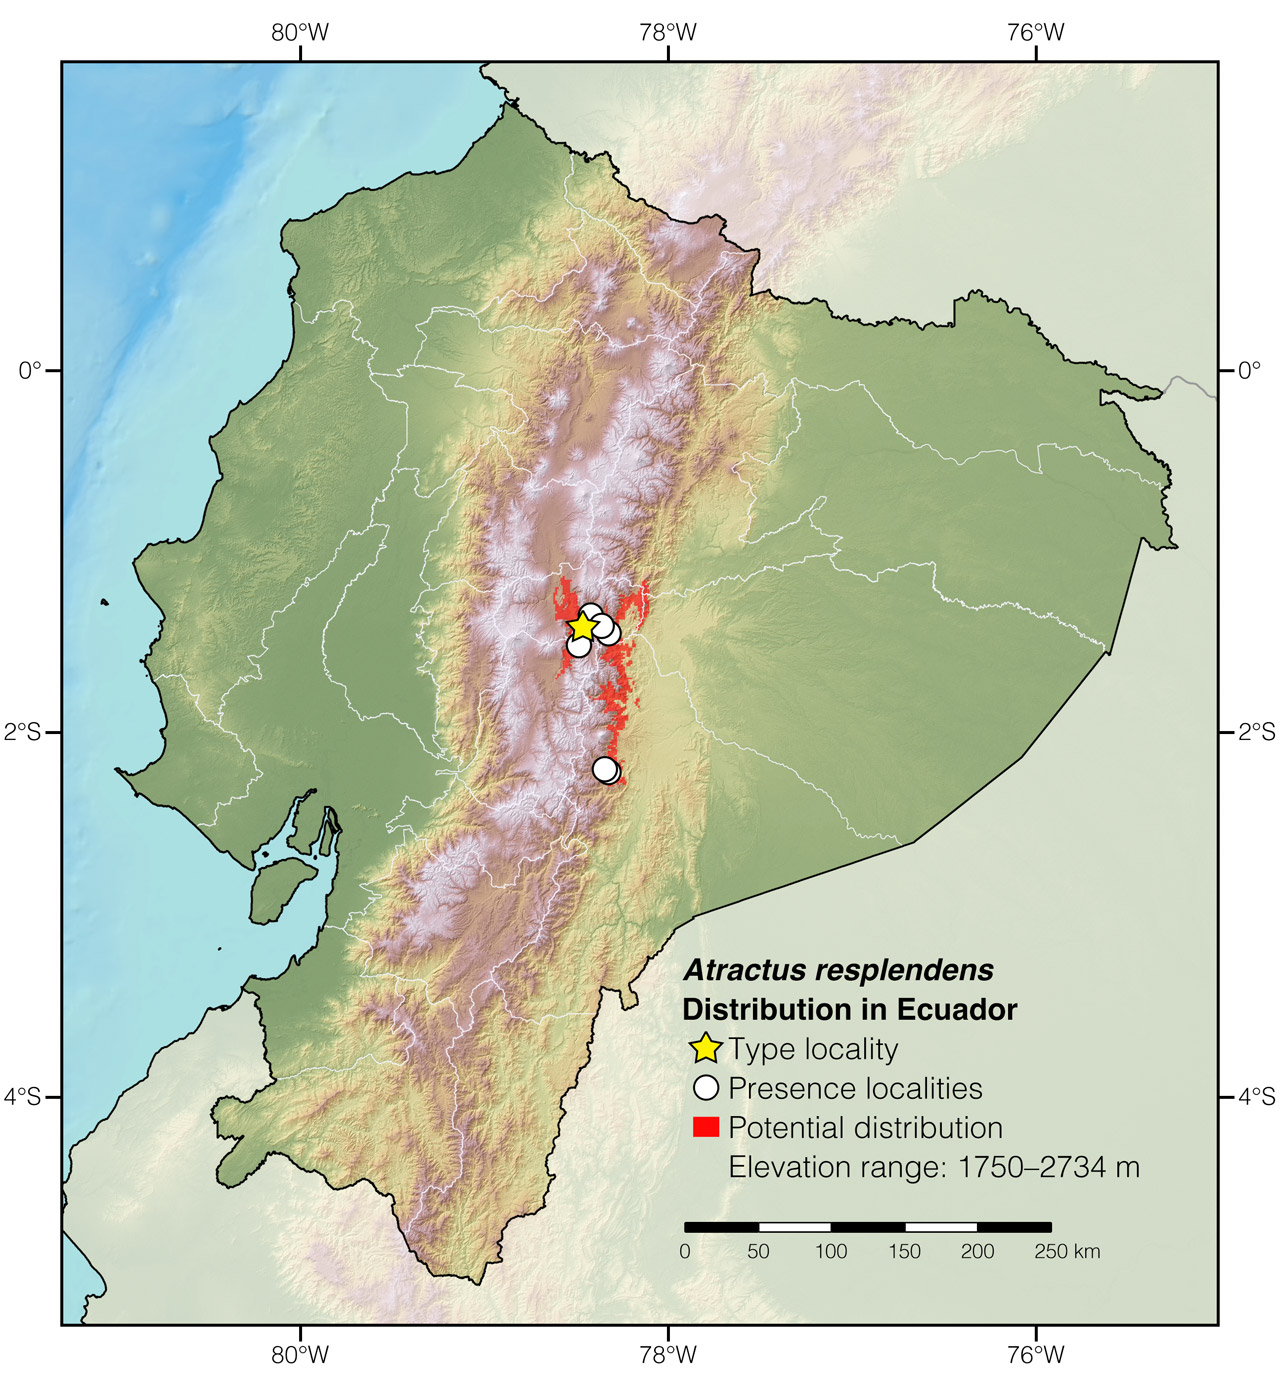 Distribution of Atractus resplendens in Ecuador